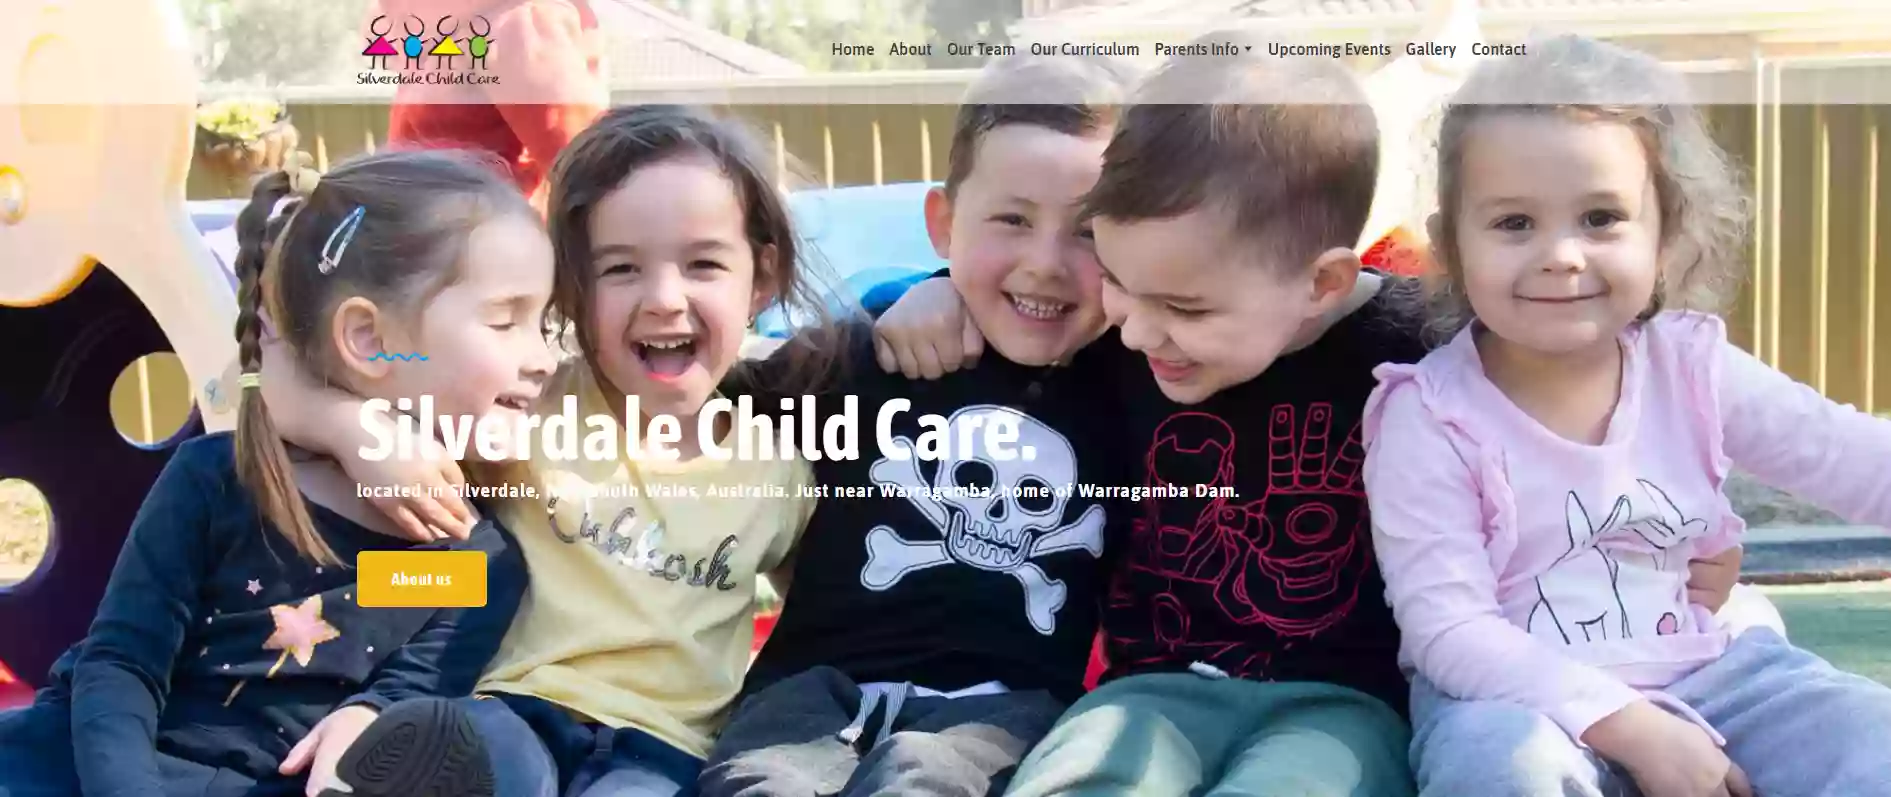 Silverdale Child Care Centre